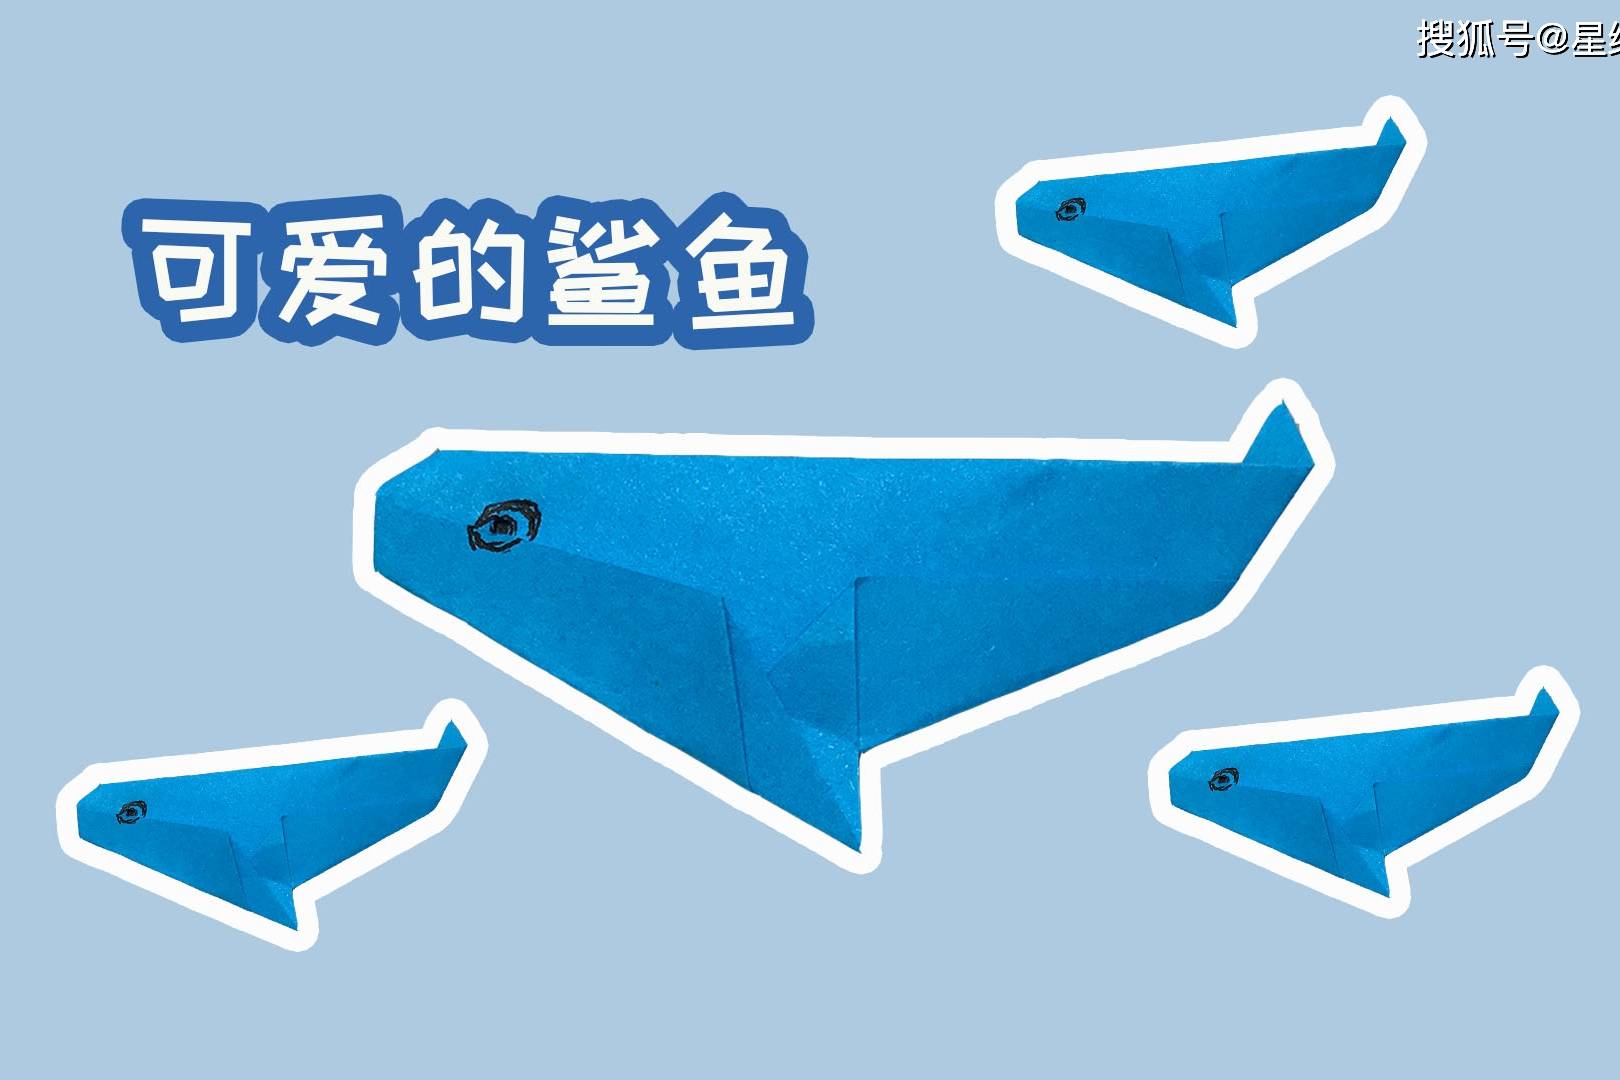 史上最简单的鲨鱼折法图片